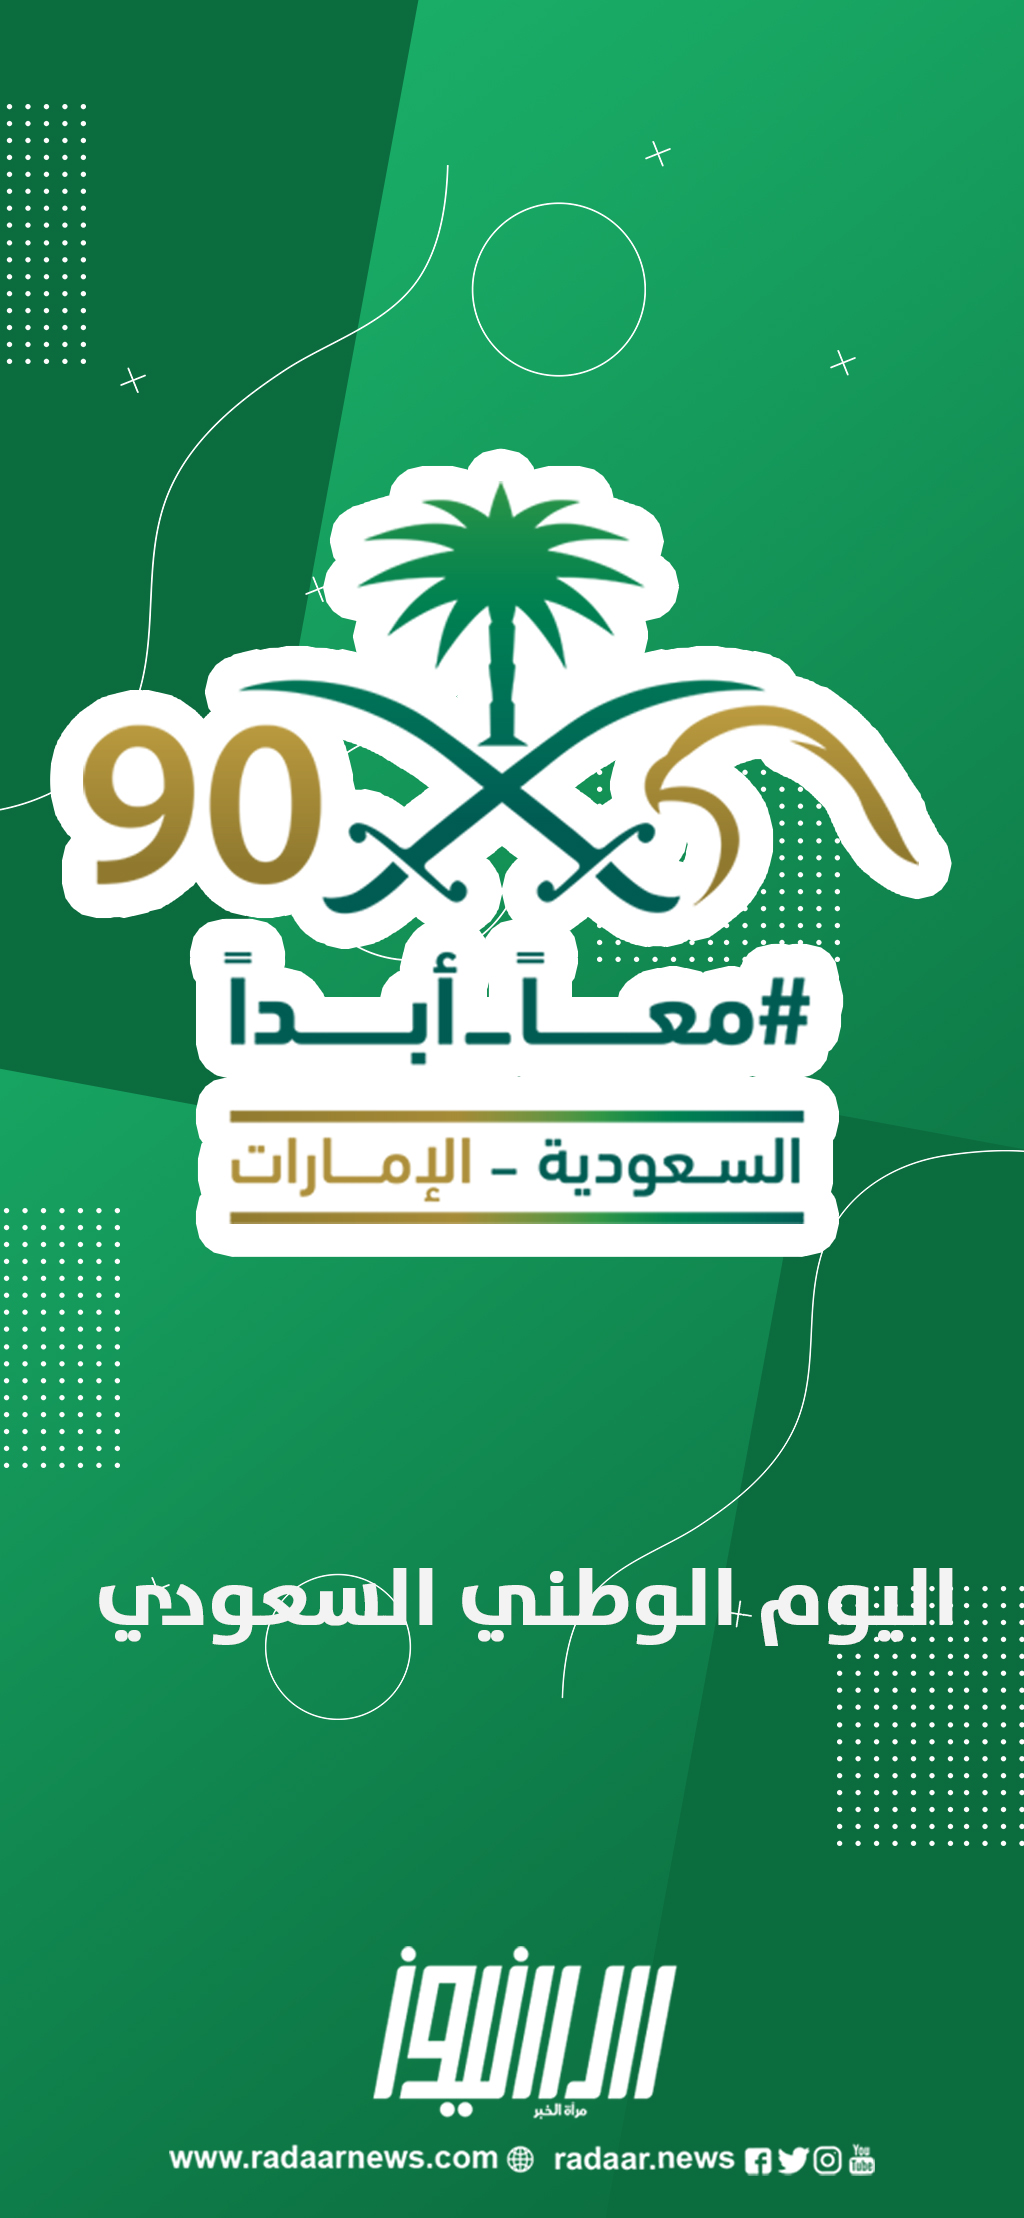 اليوم الوطني السعودي 90 رادار نيوز